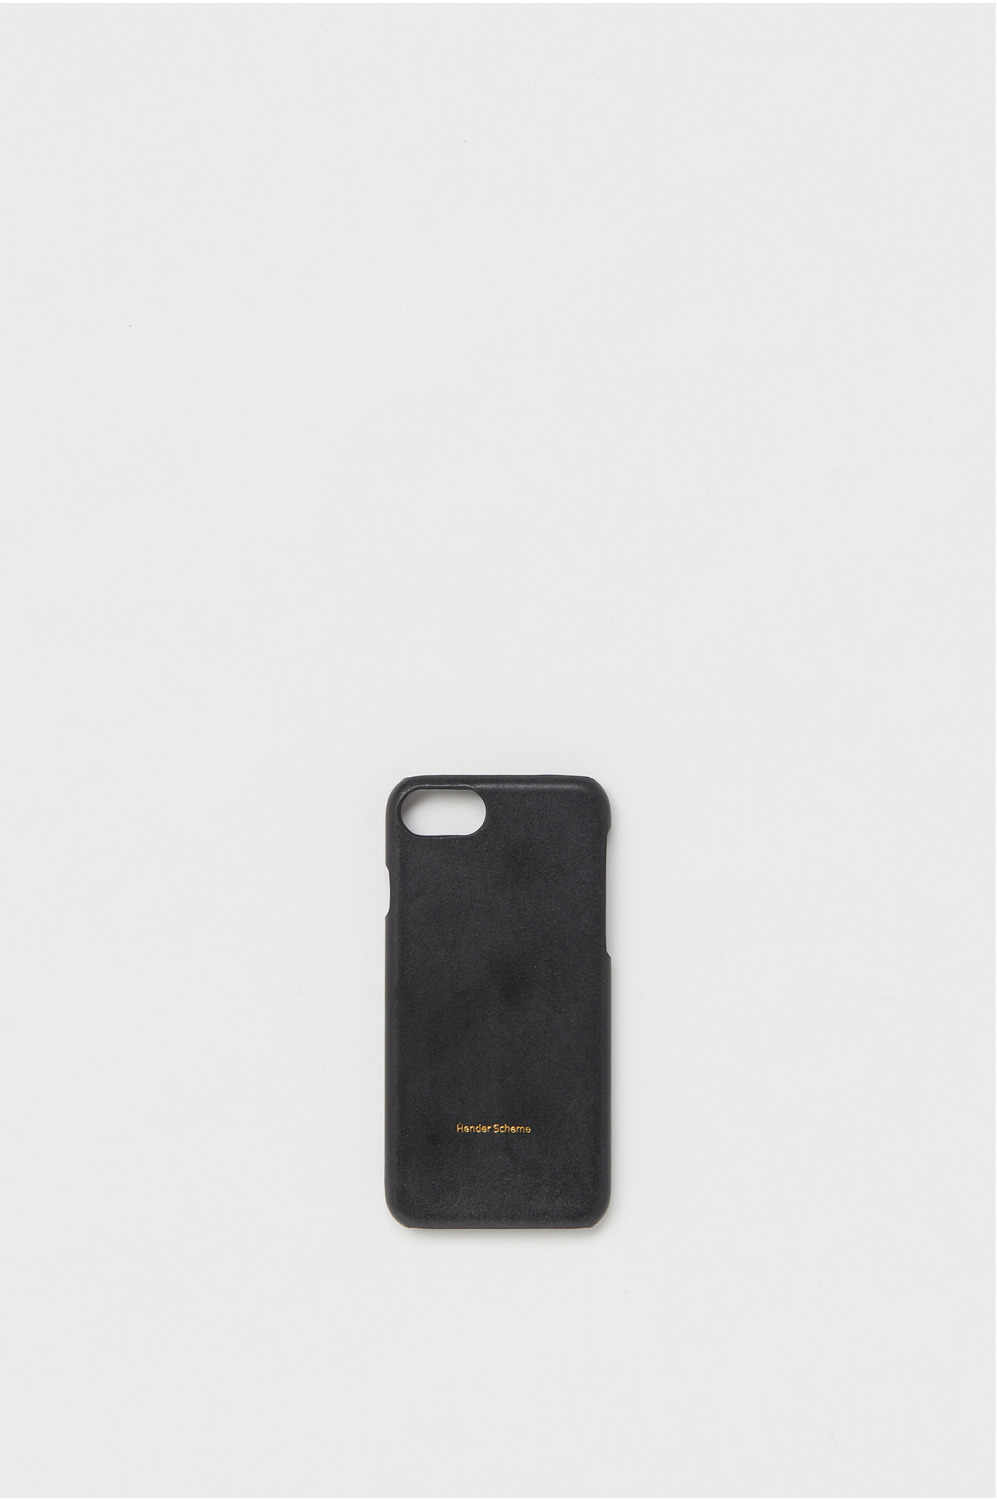 iphone case 8 詳細画像 black 1